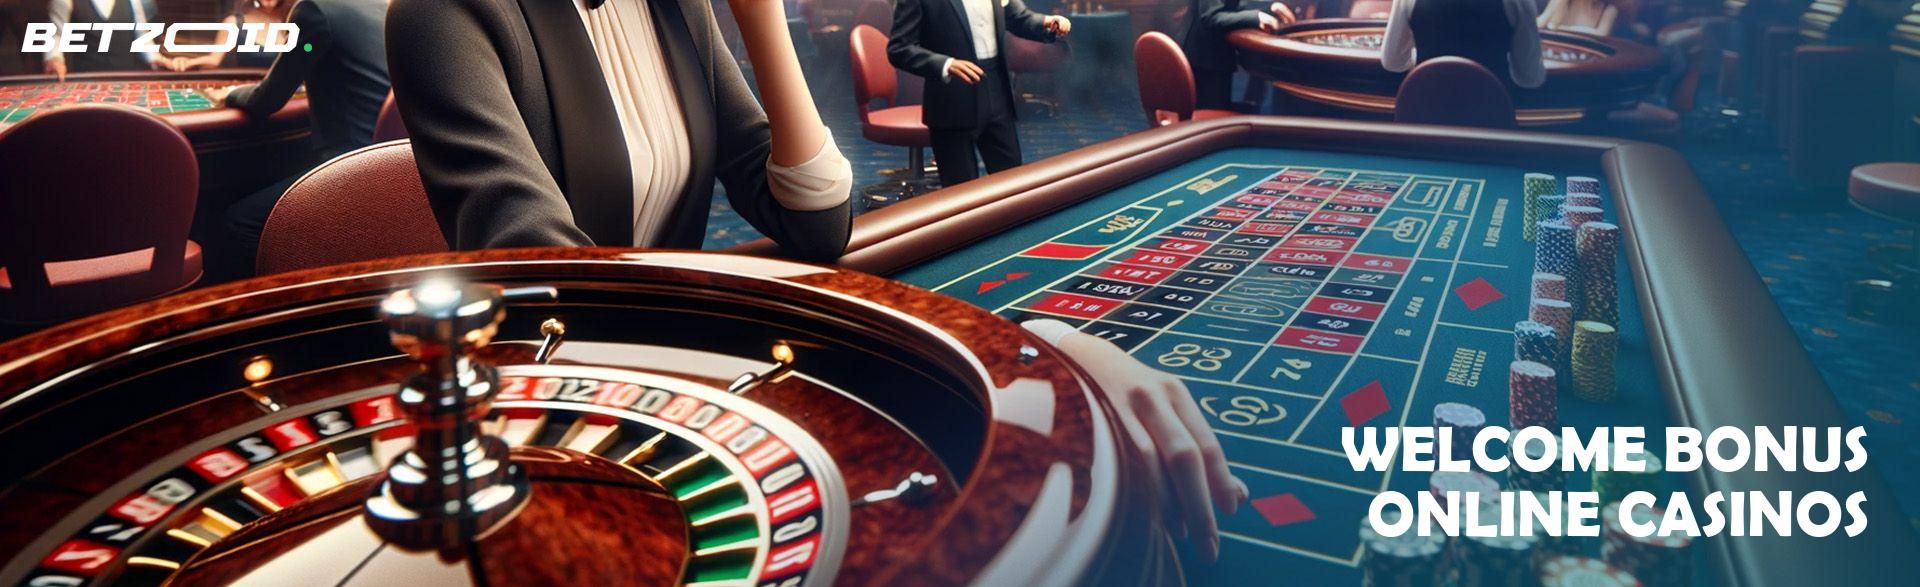 Welcome Bonus Online Casinos.